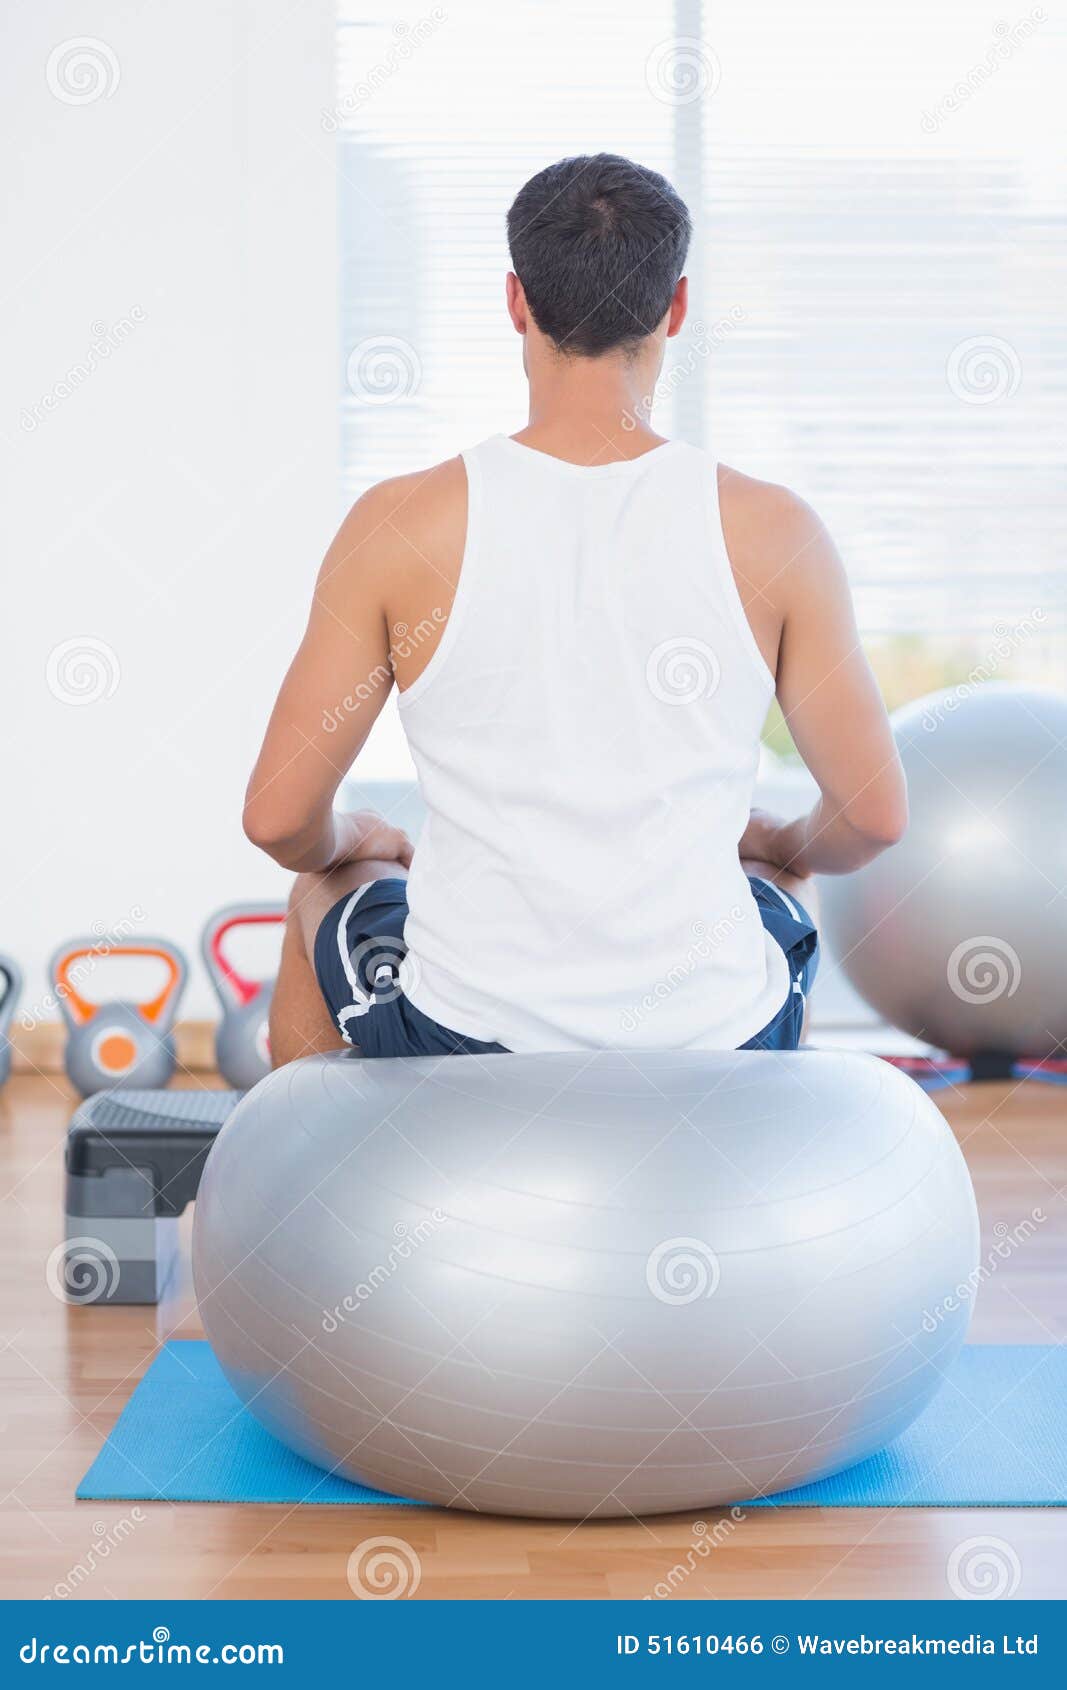 sitting on gym ball